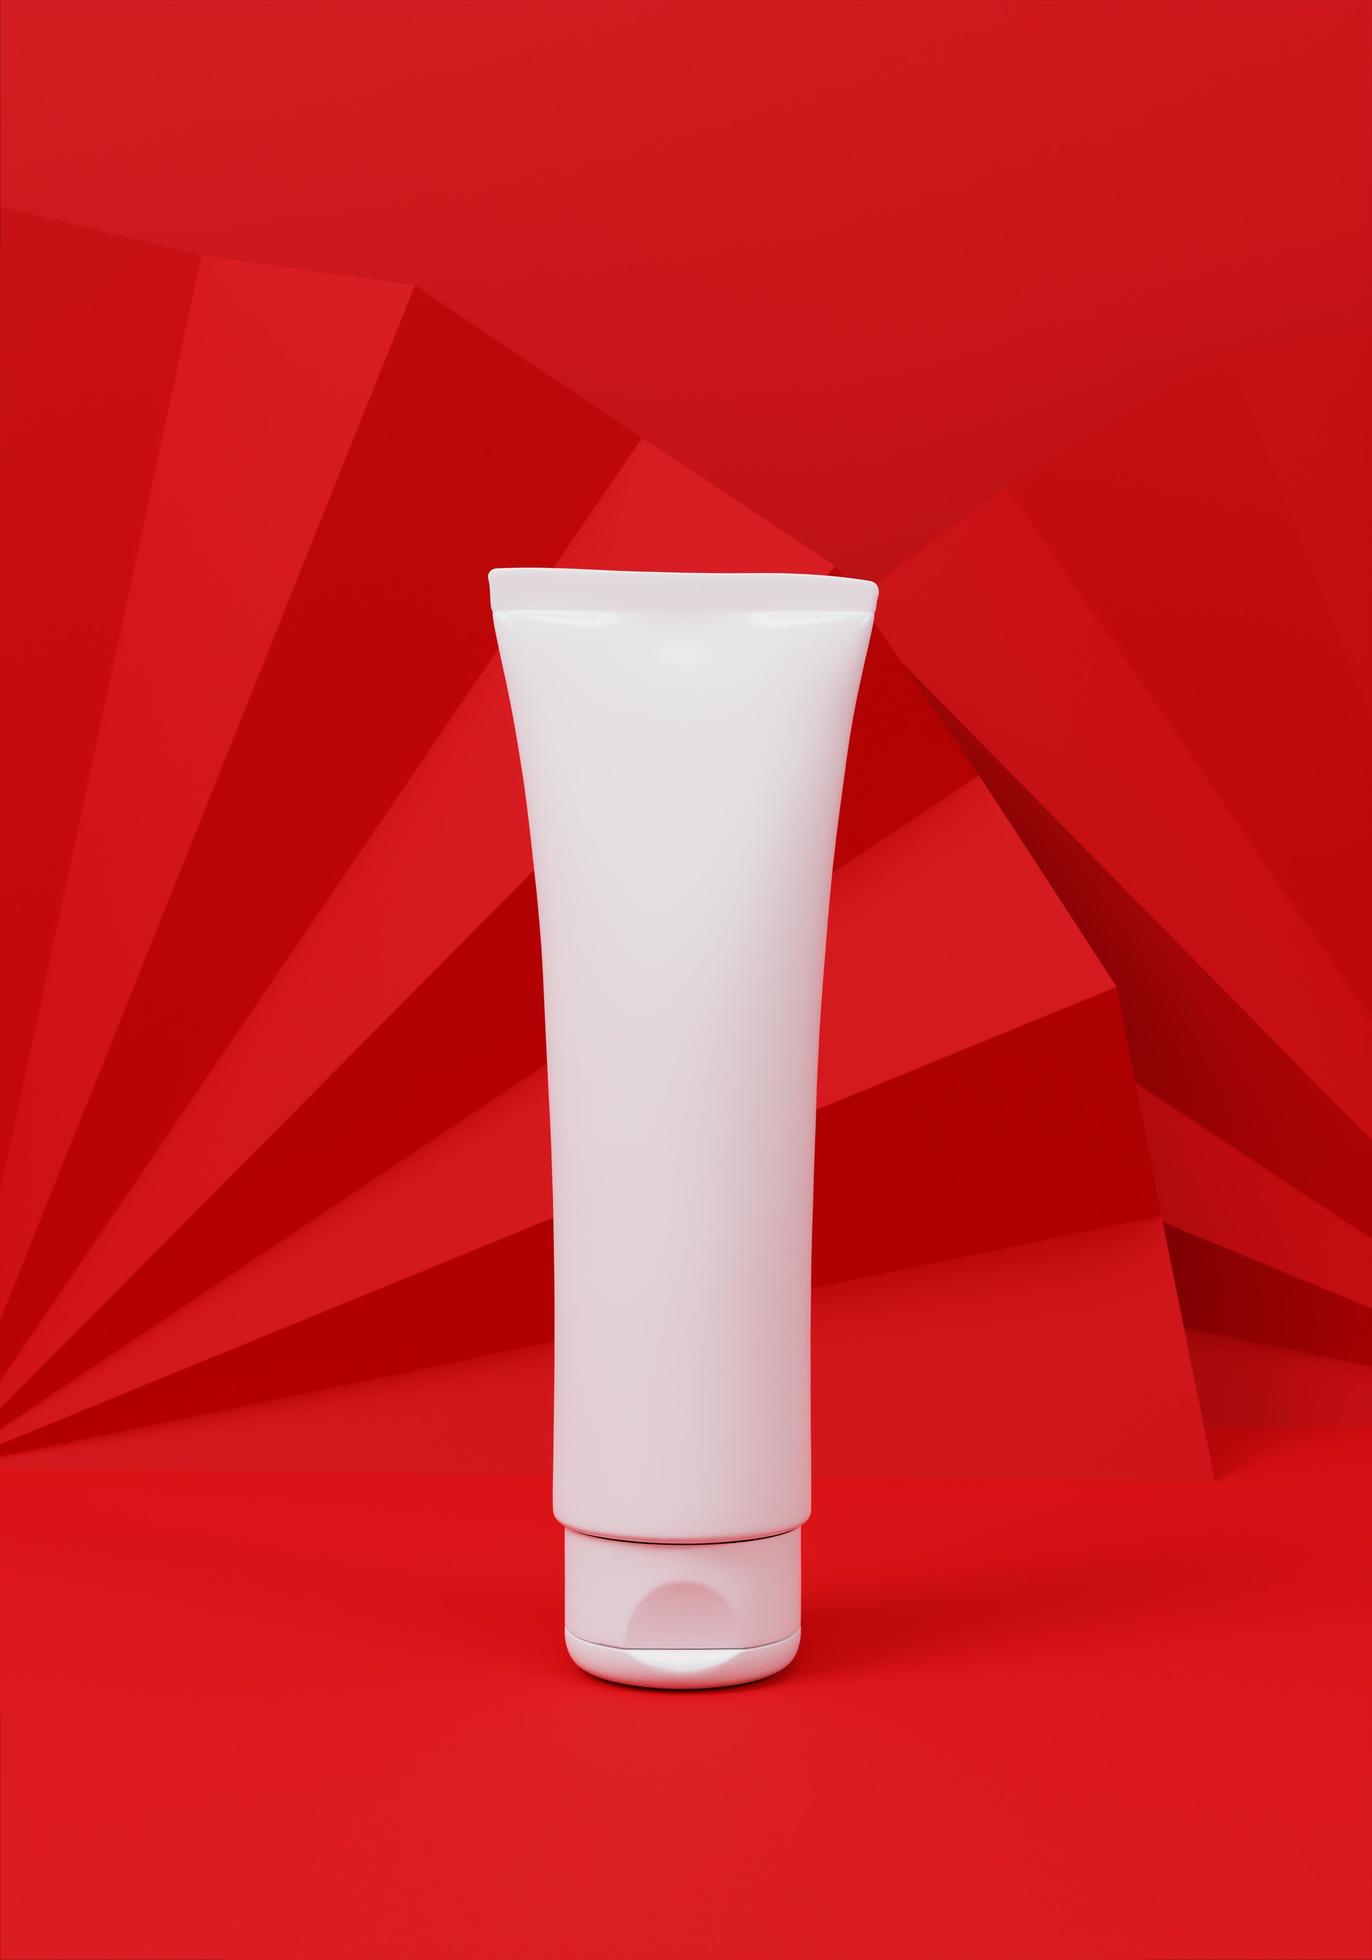 un tubo de compresión para aplicar cremas o cosméticos foto